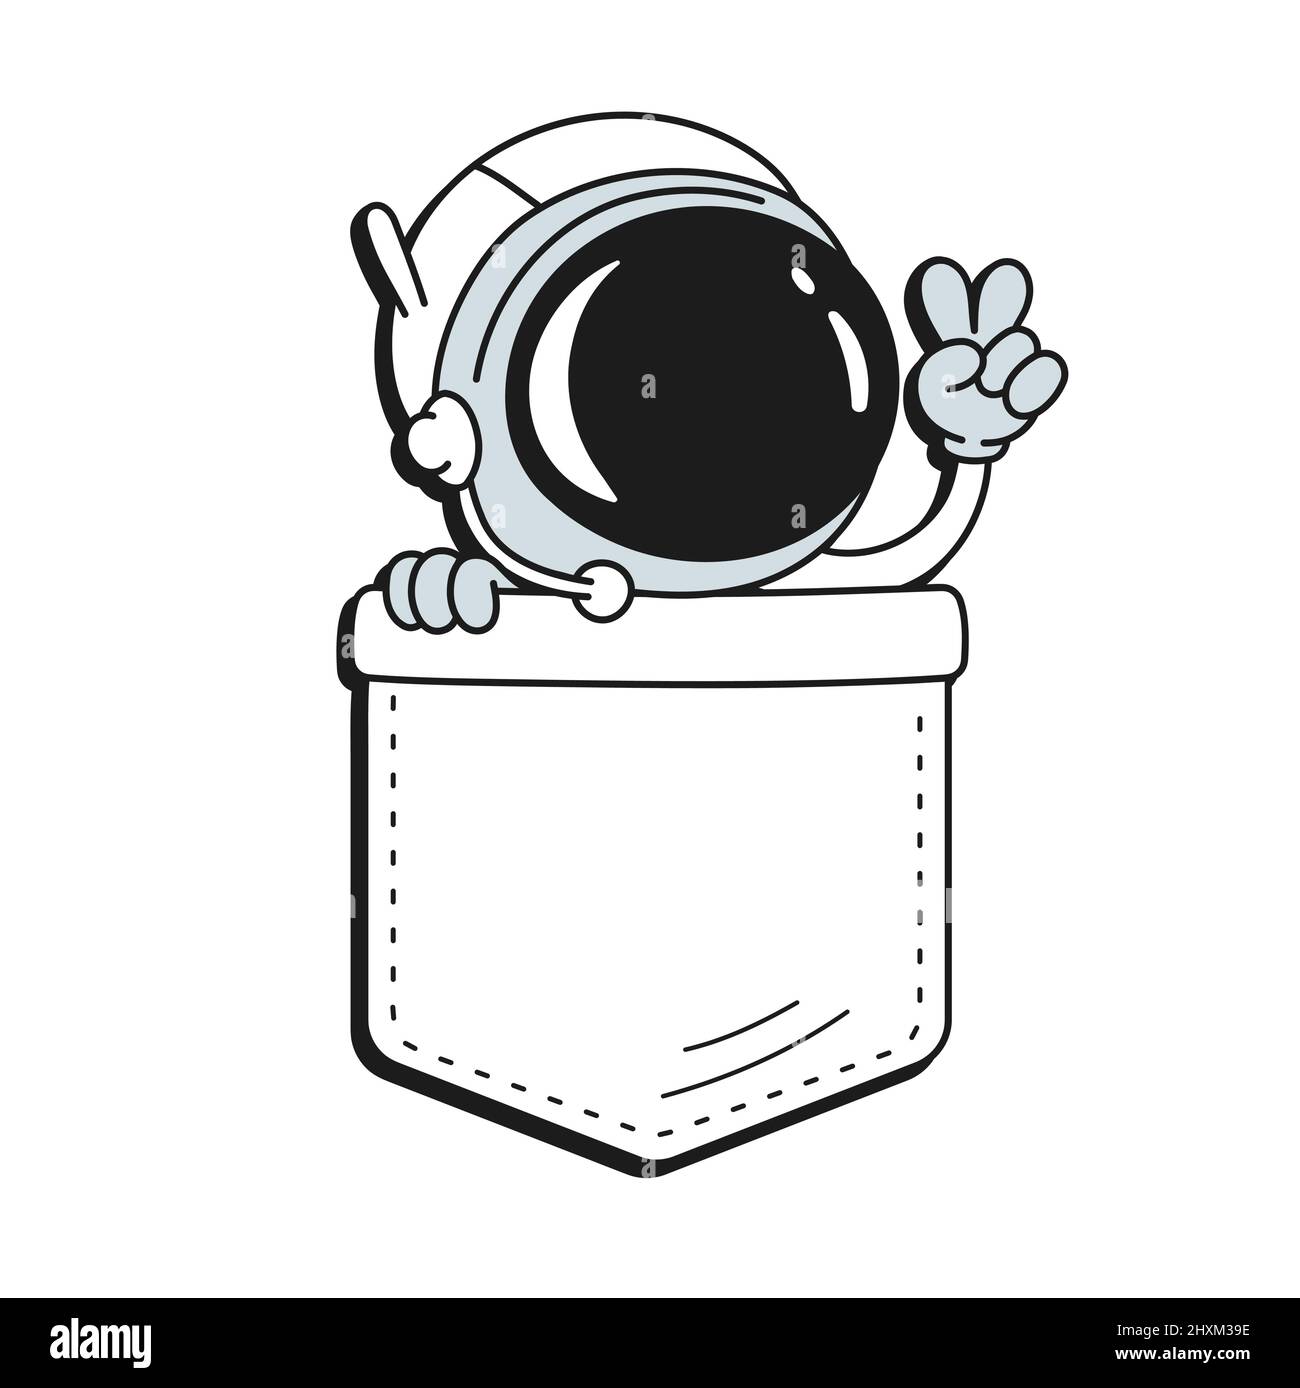 Imprimé t-shirt de poche pour astronaute.dessin animé vectoriel avec motif d'illustration du logo de personnage de style Doodle.isolé sur fond blanc. Drôle d'imprimé astronaute vintage pour un t-shirt de poche, concept de vêtements Illustration de Vecteur